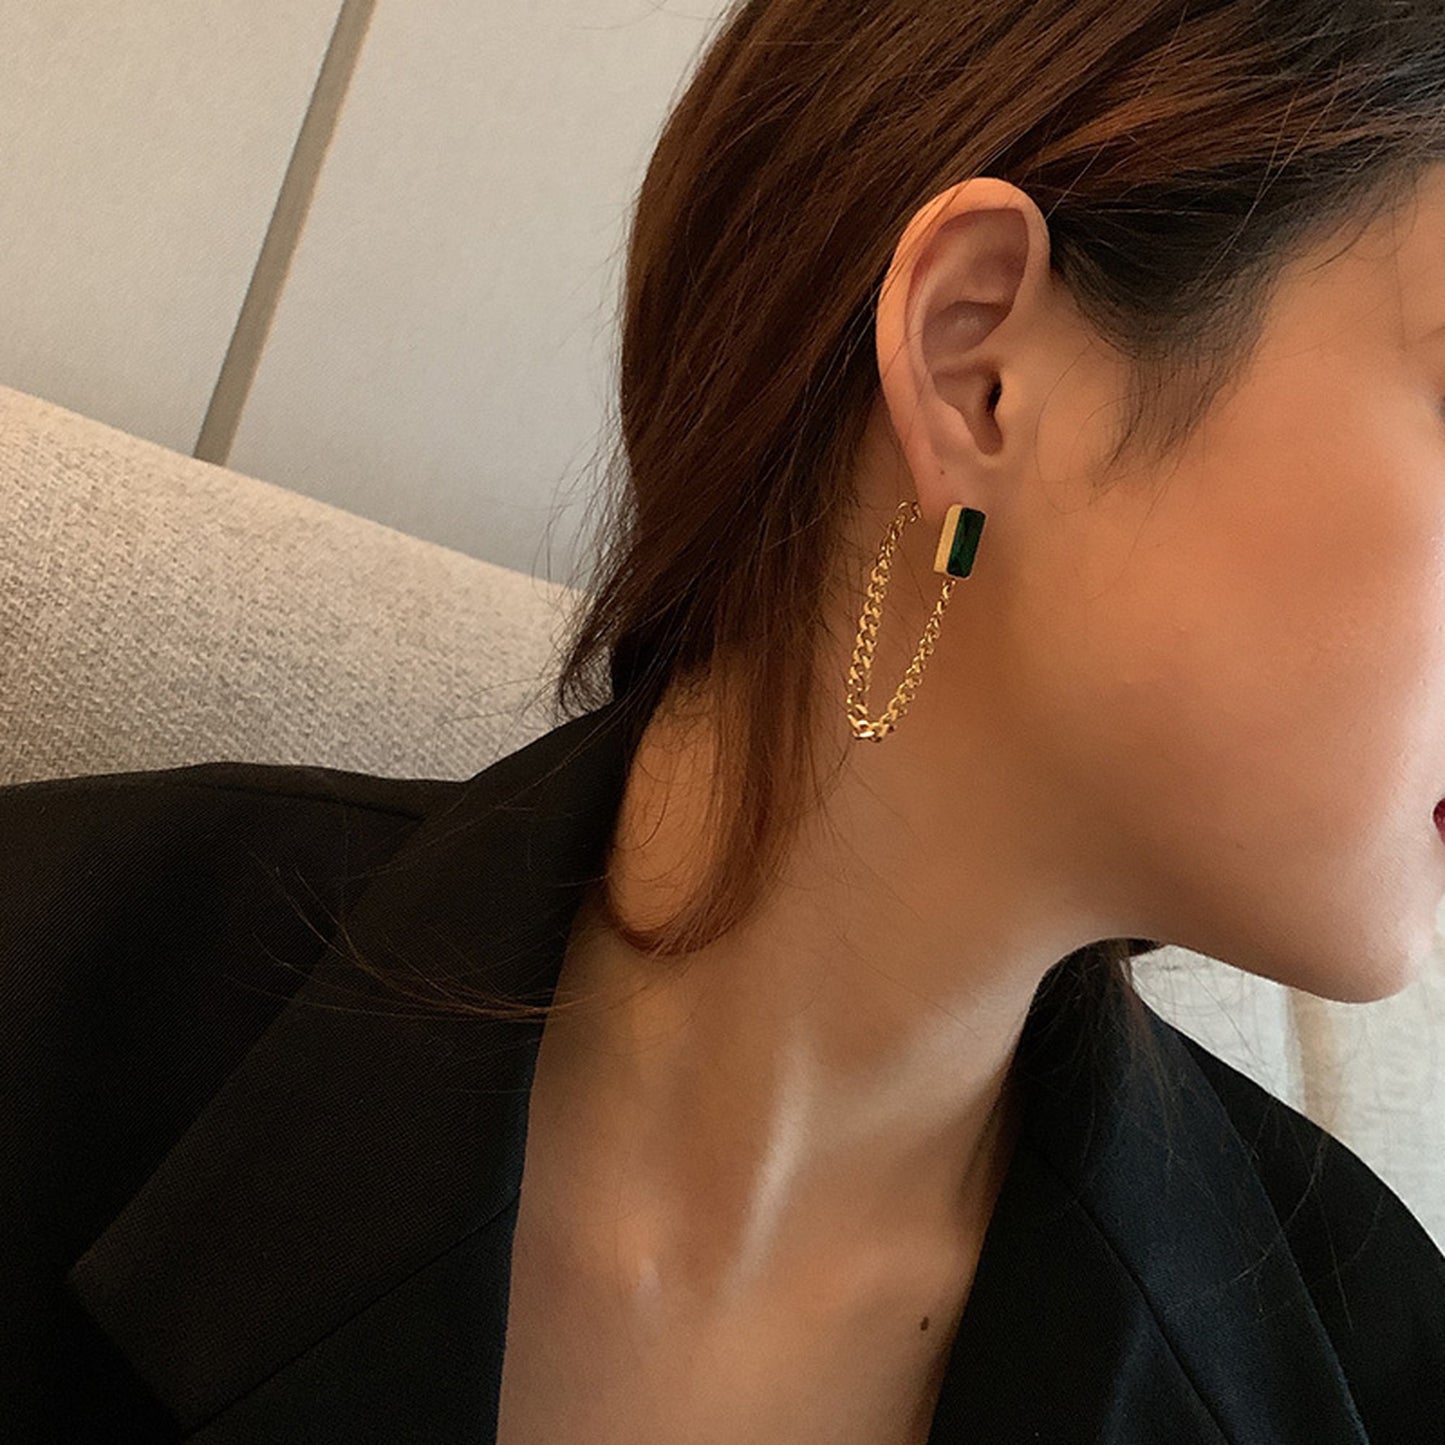 Green chain earrings 5515